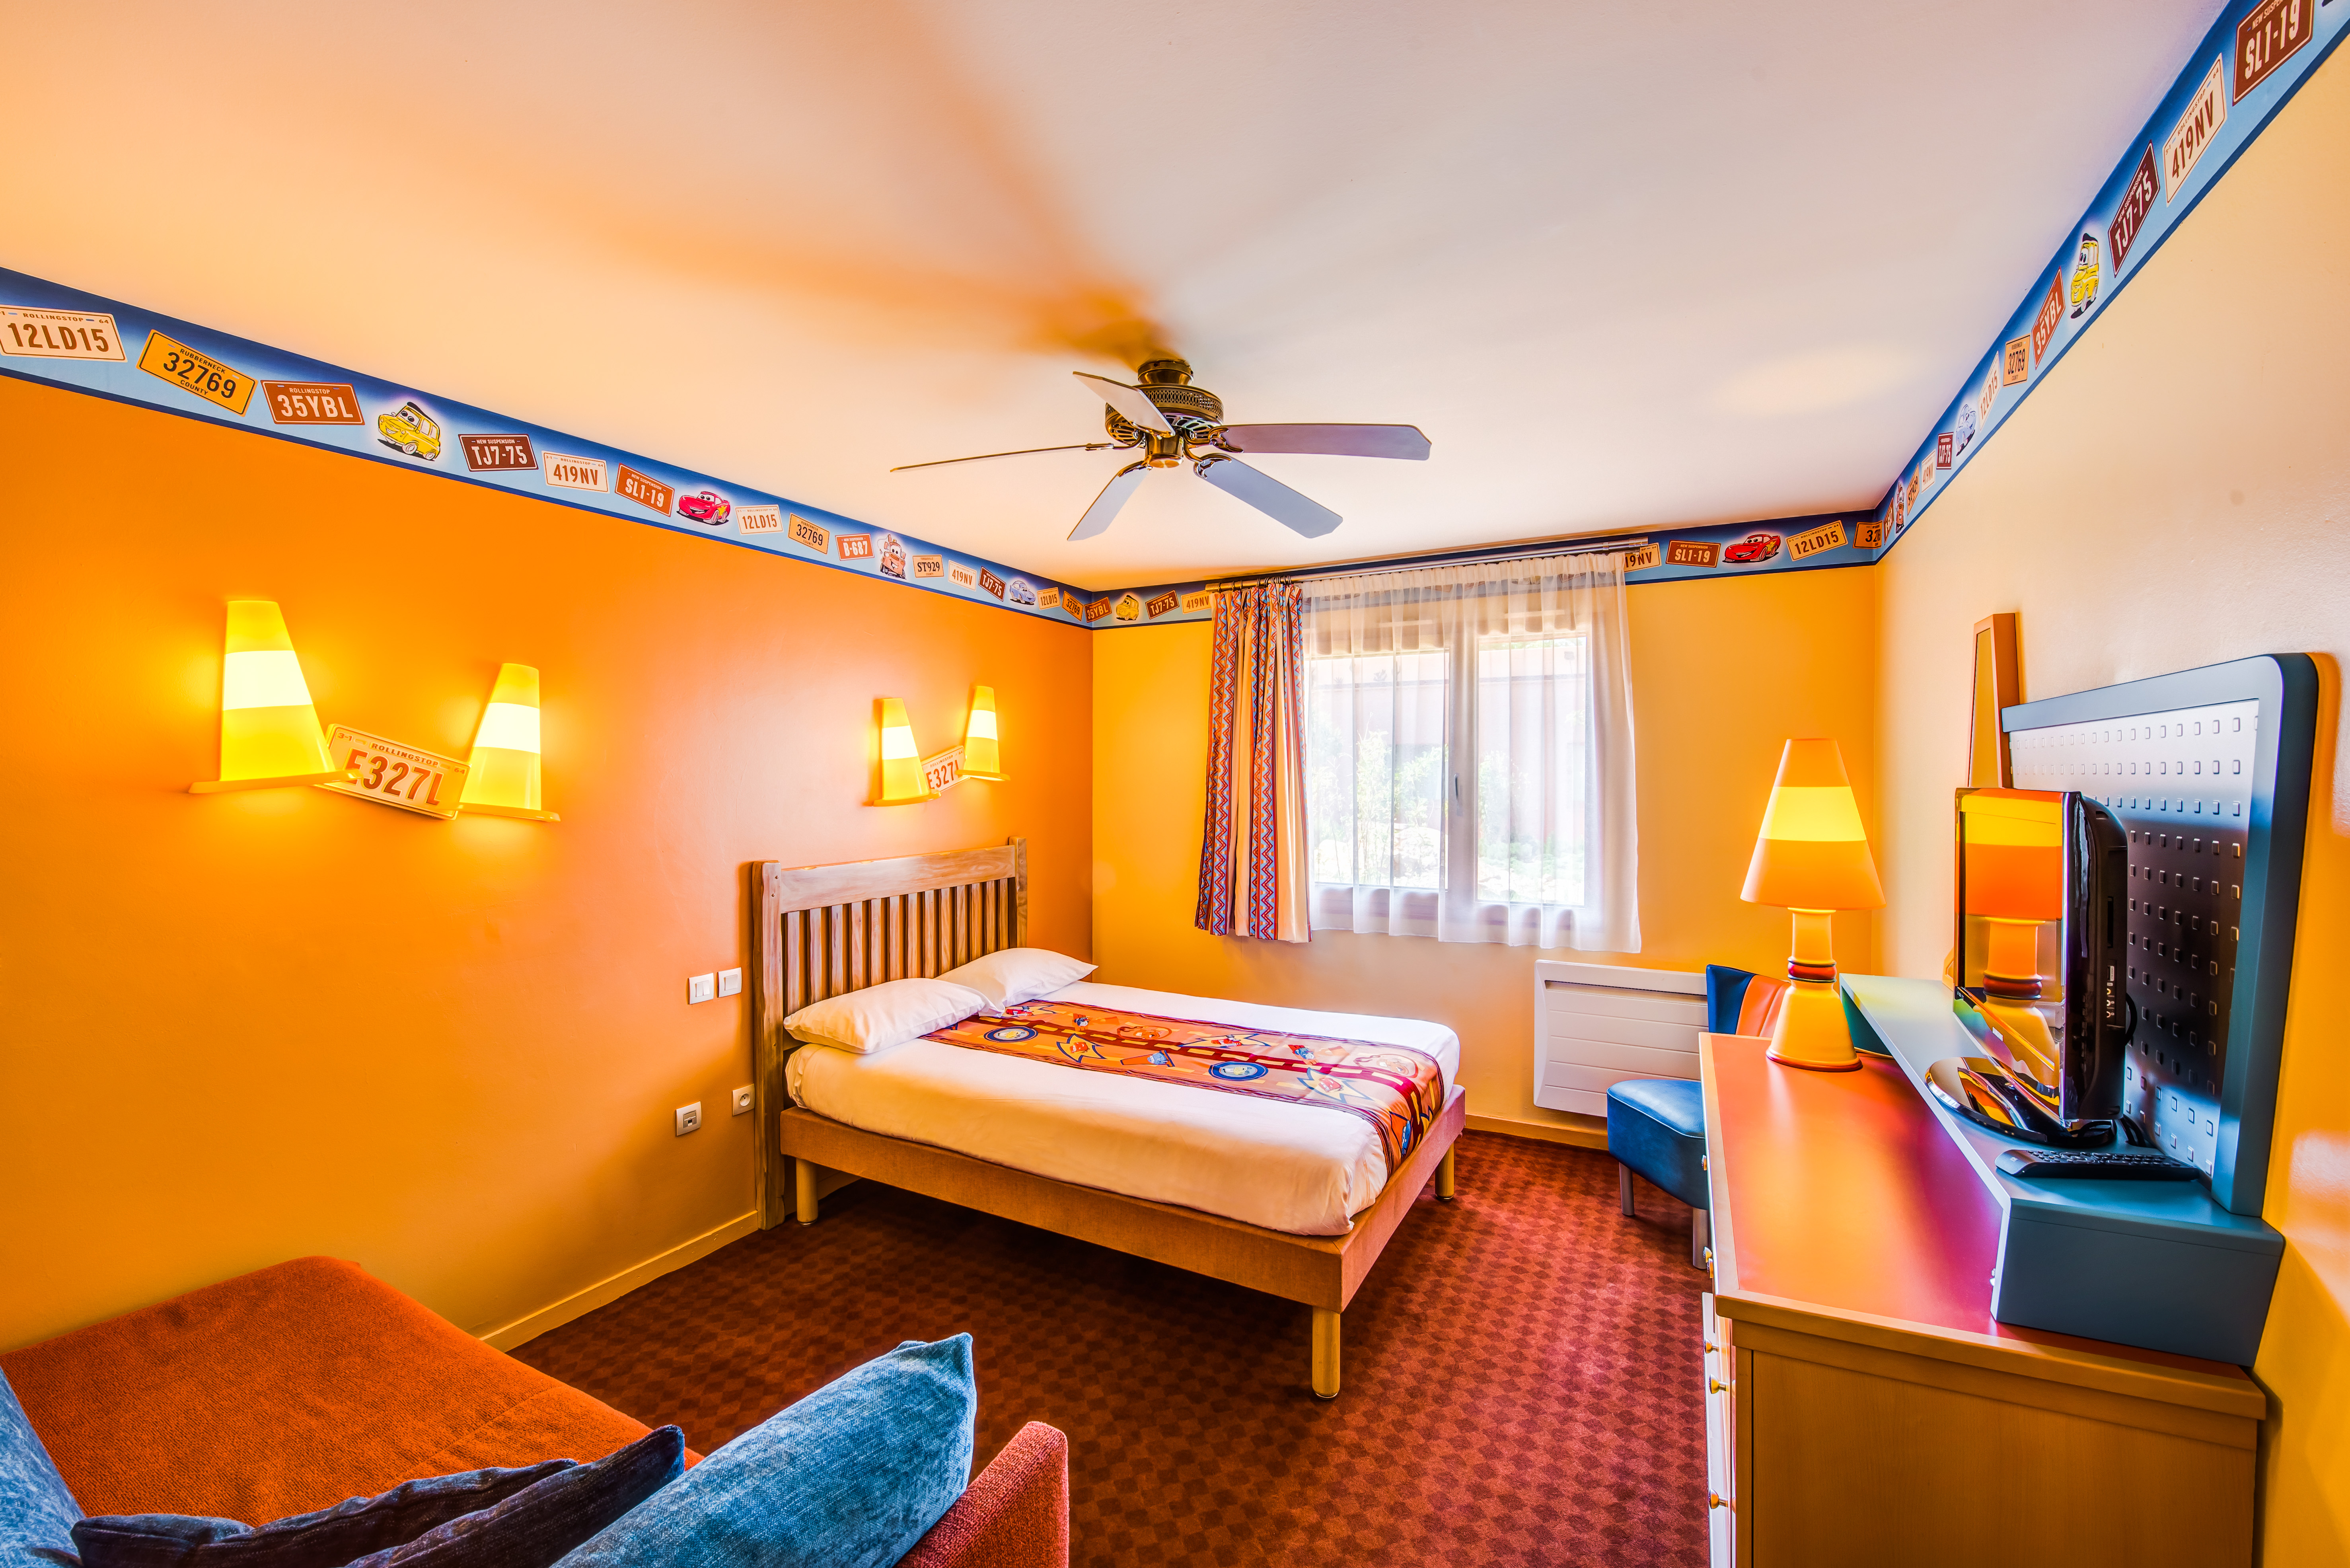 Disney Hotel Santa Fe - Évaluations de l'hôtel 2 étoiles à Coupvray